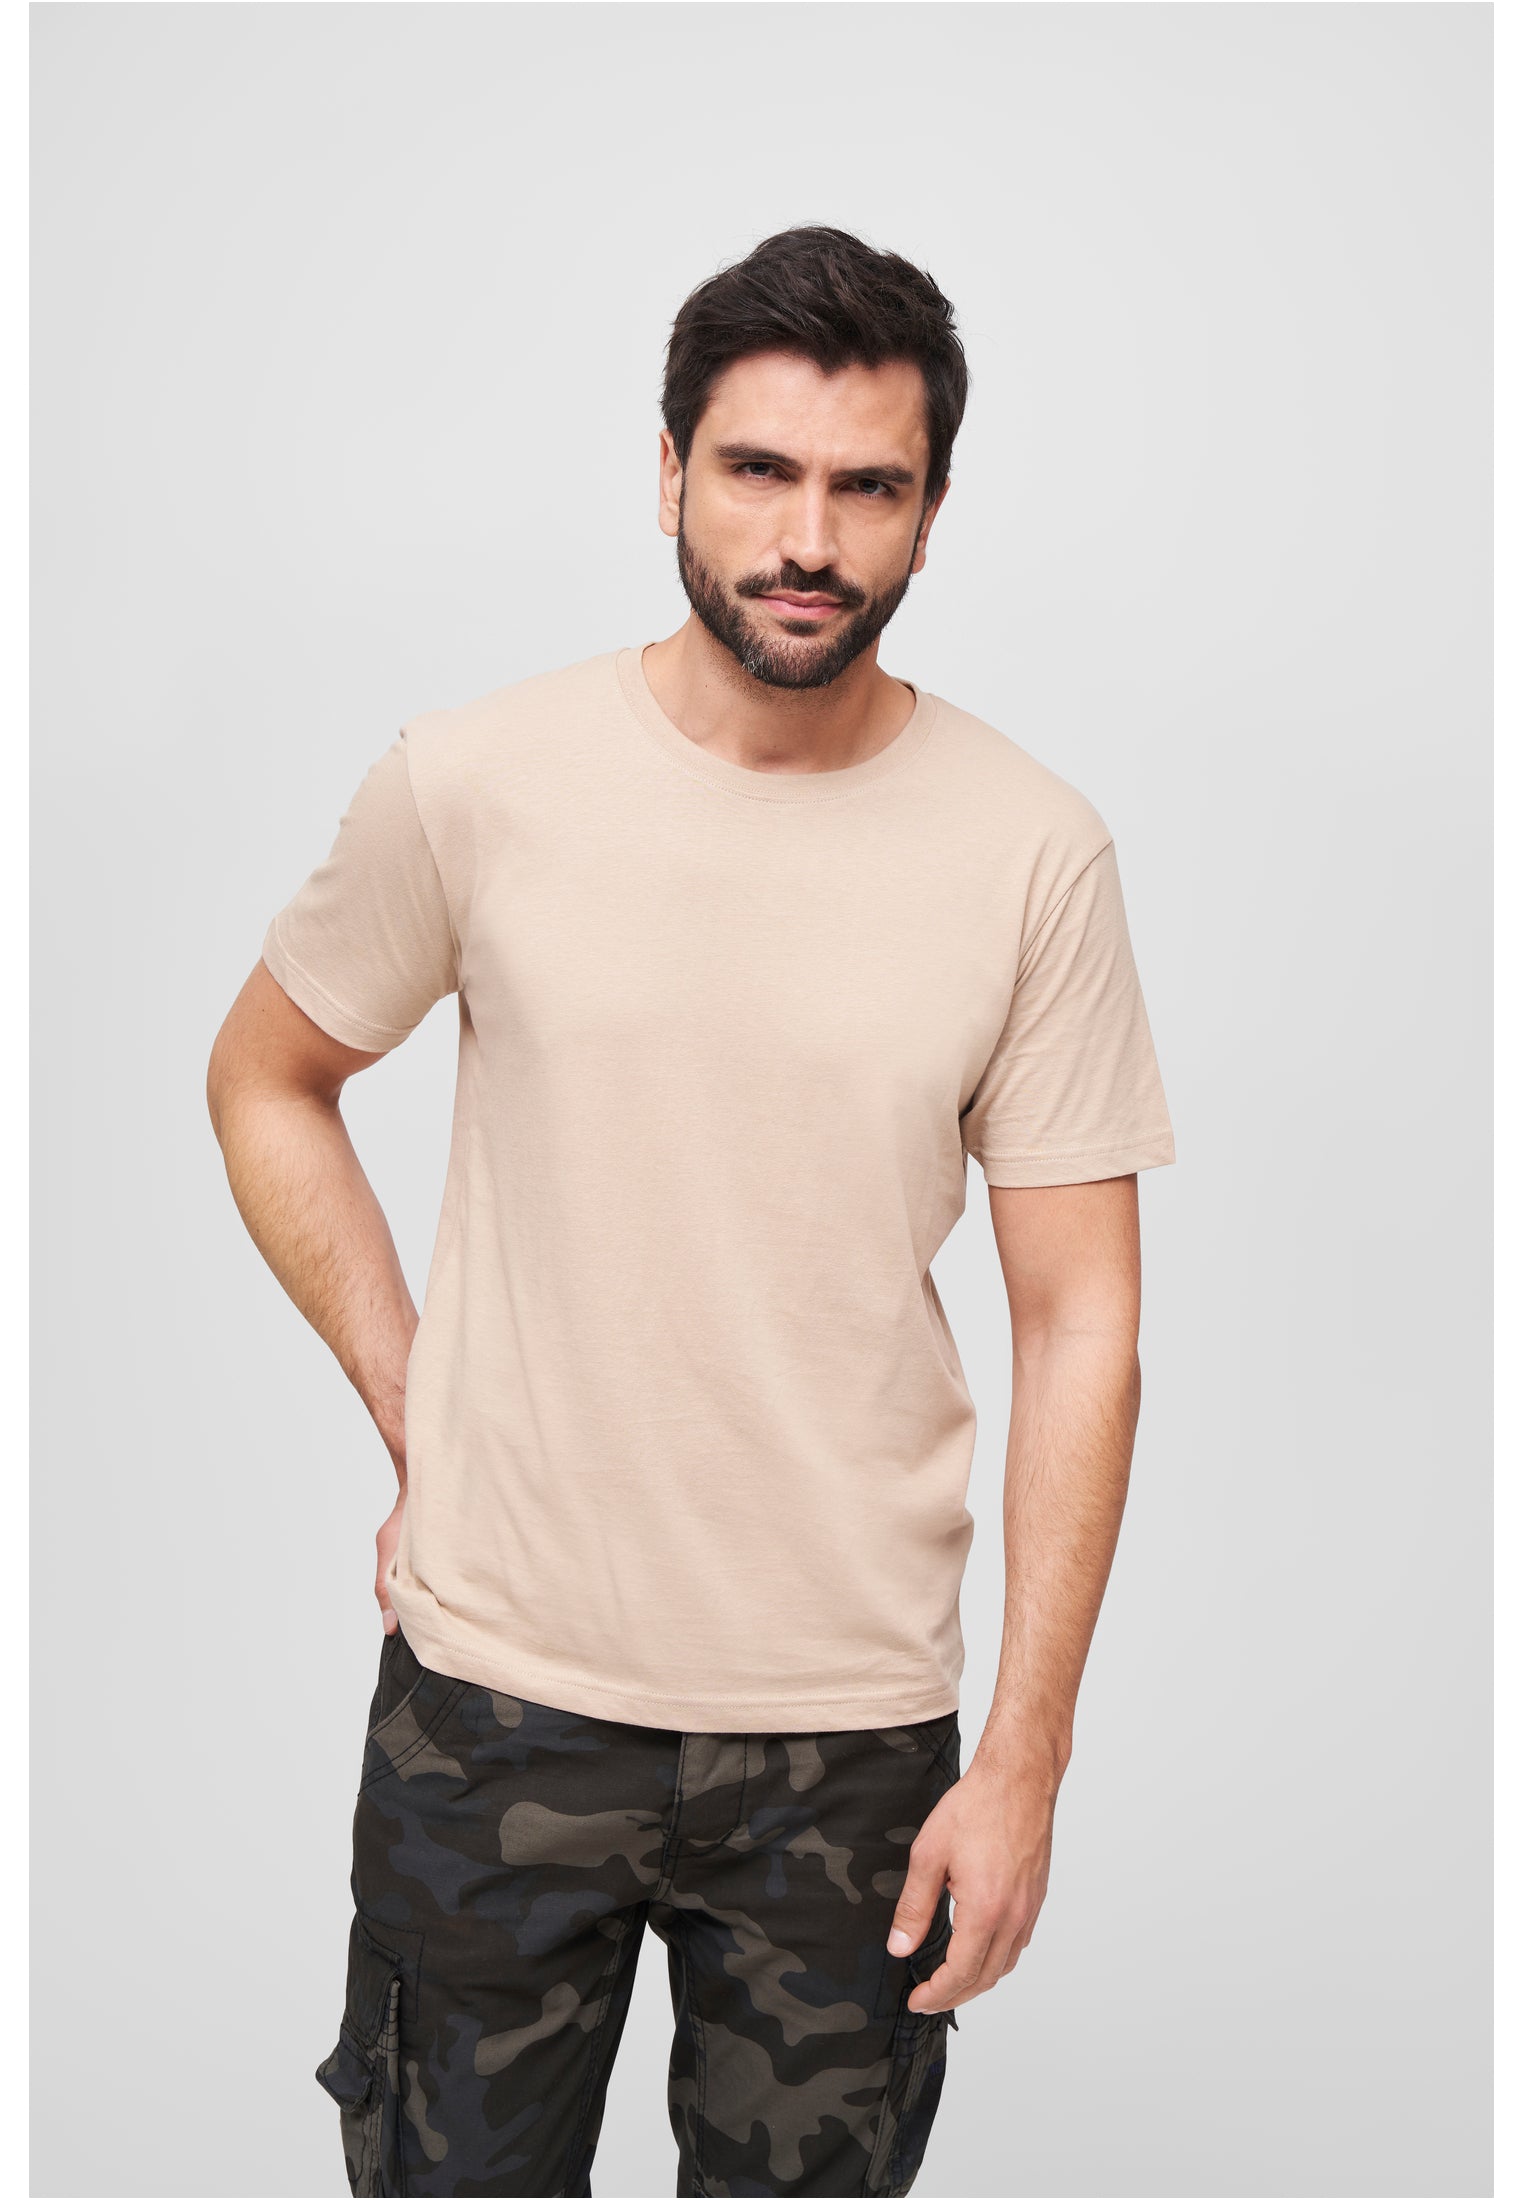 Standard Cotton T-Shirt